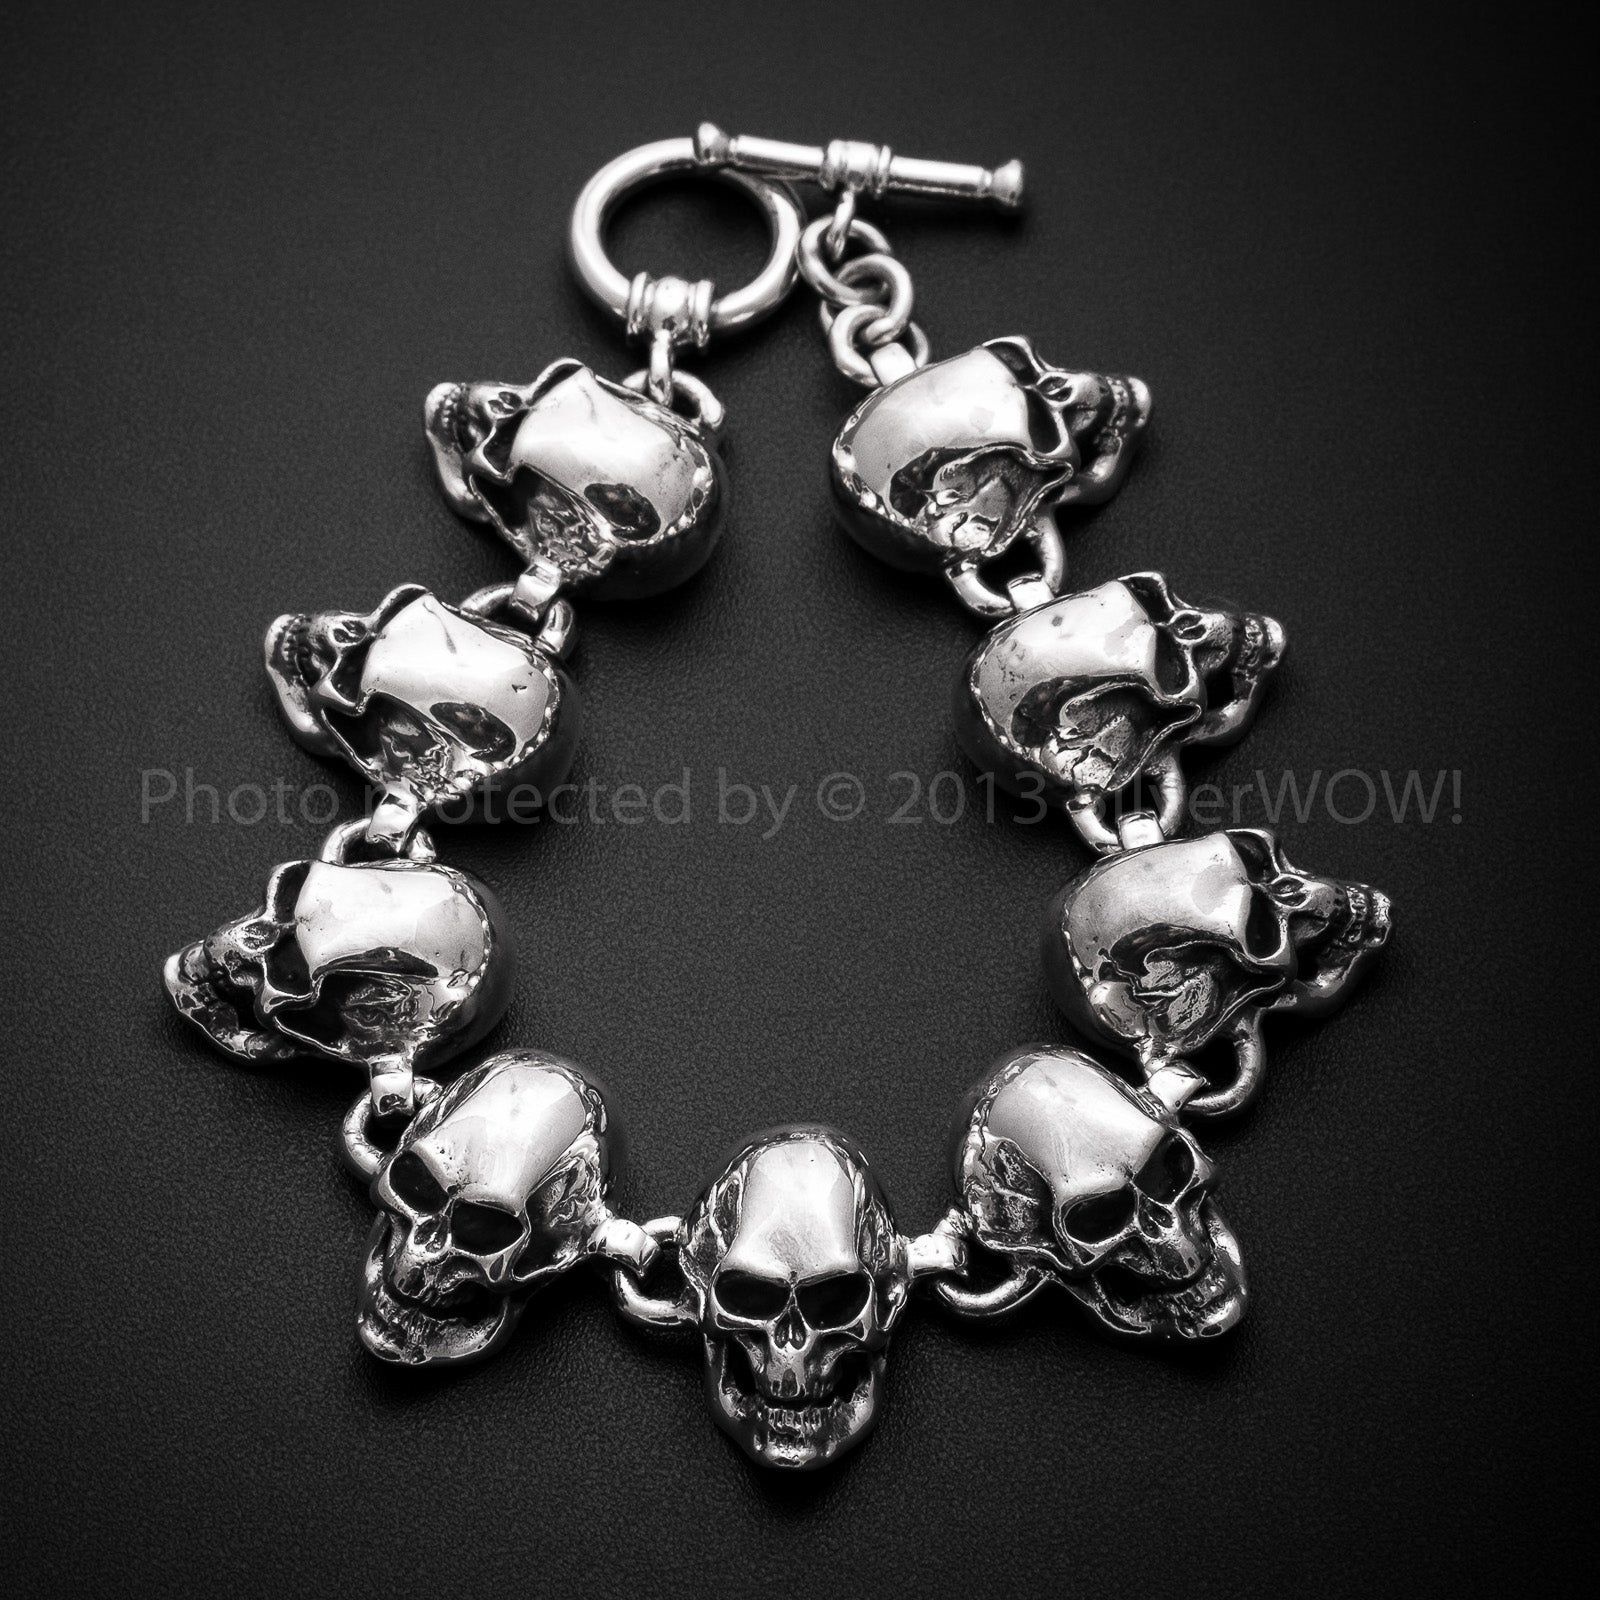 【匿名配送】【送料無料】Silver Skull Bracelet 925